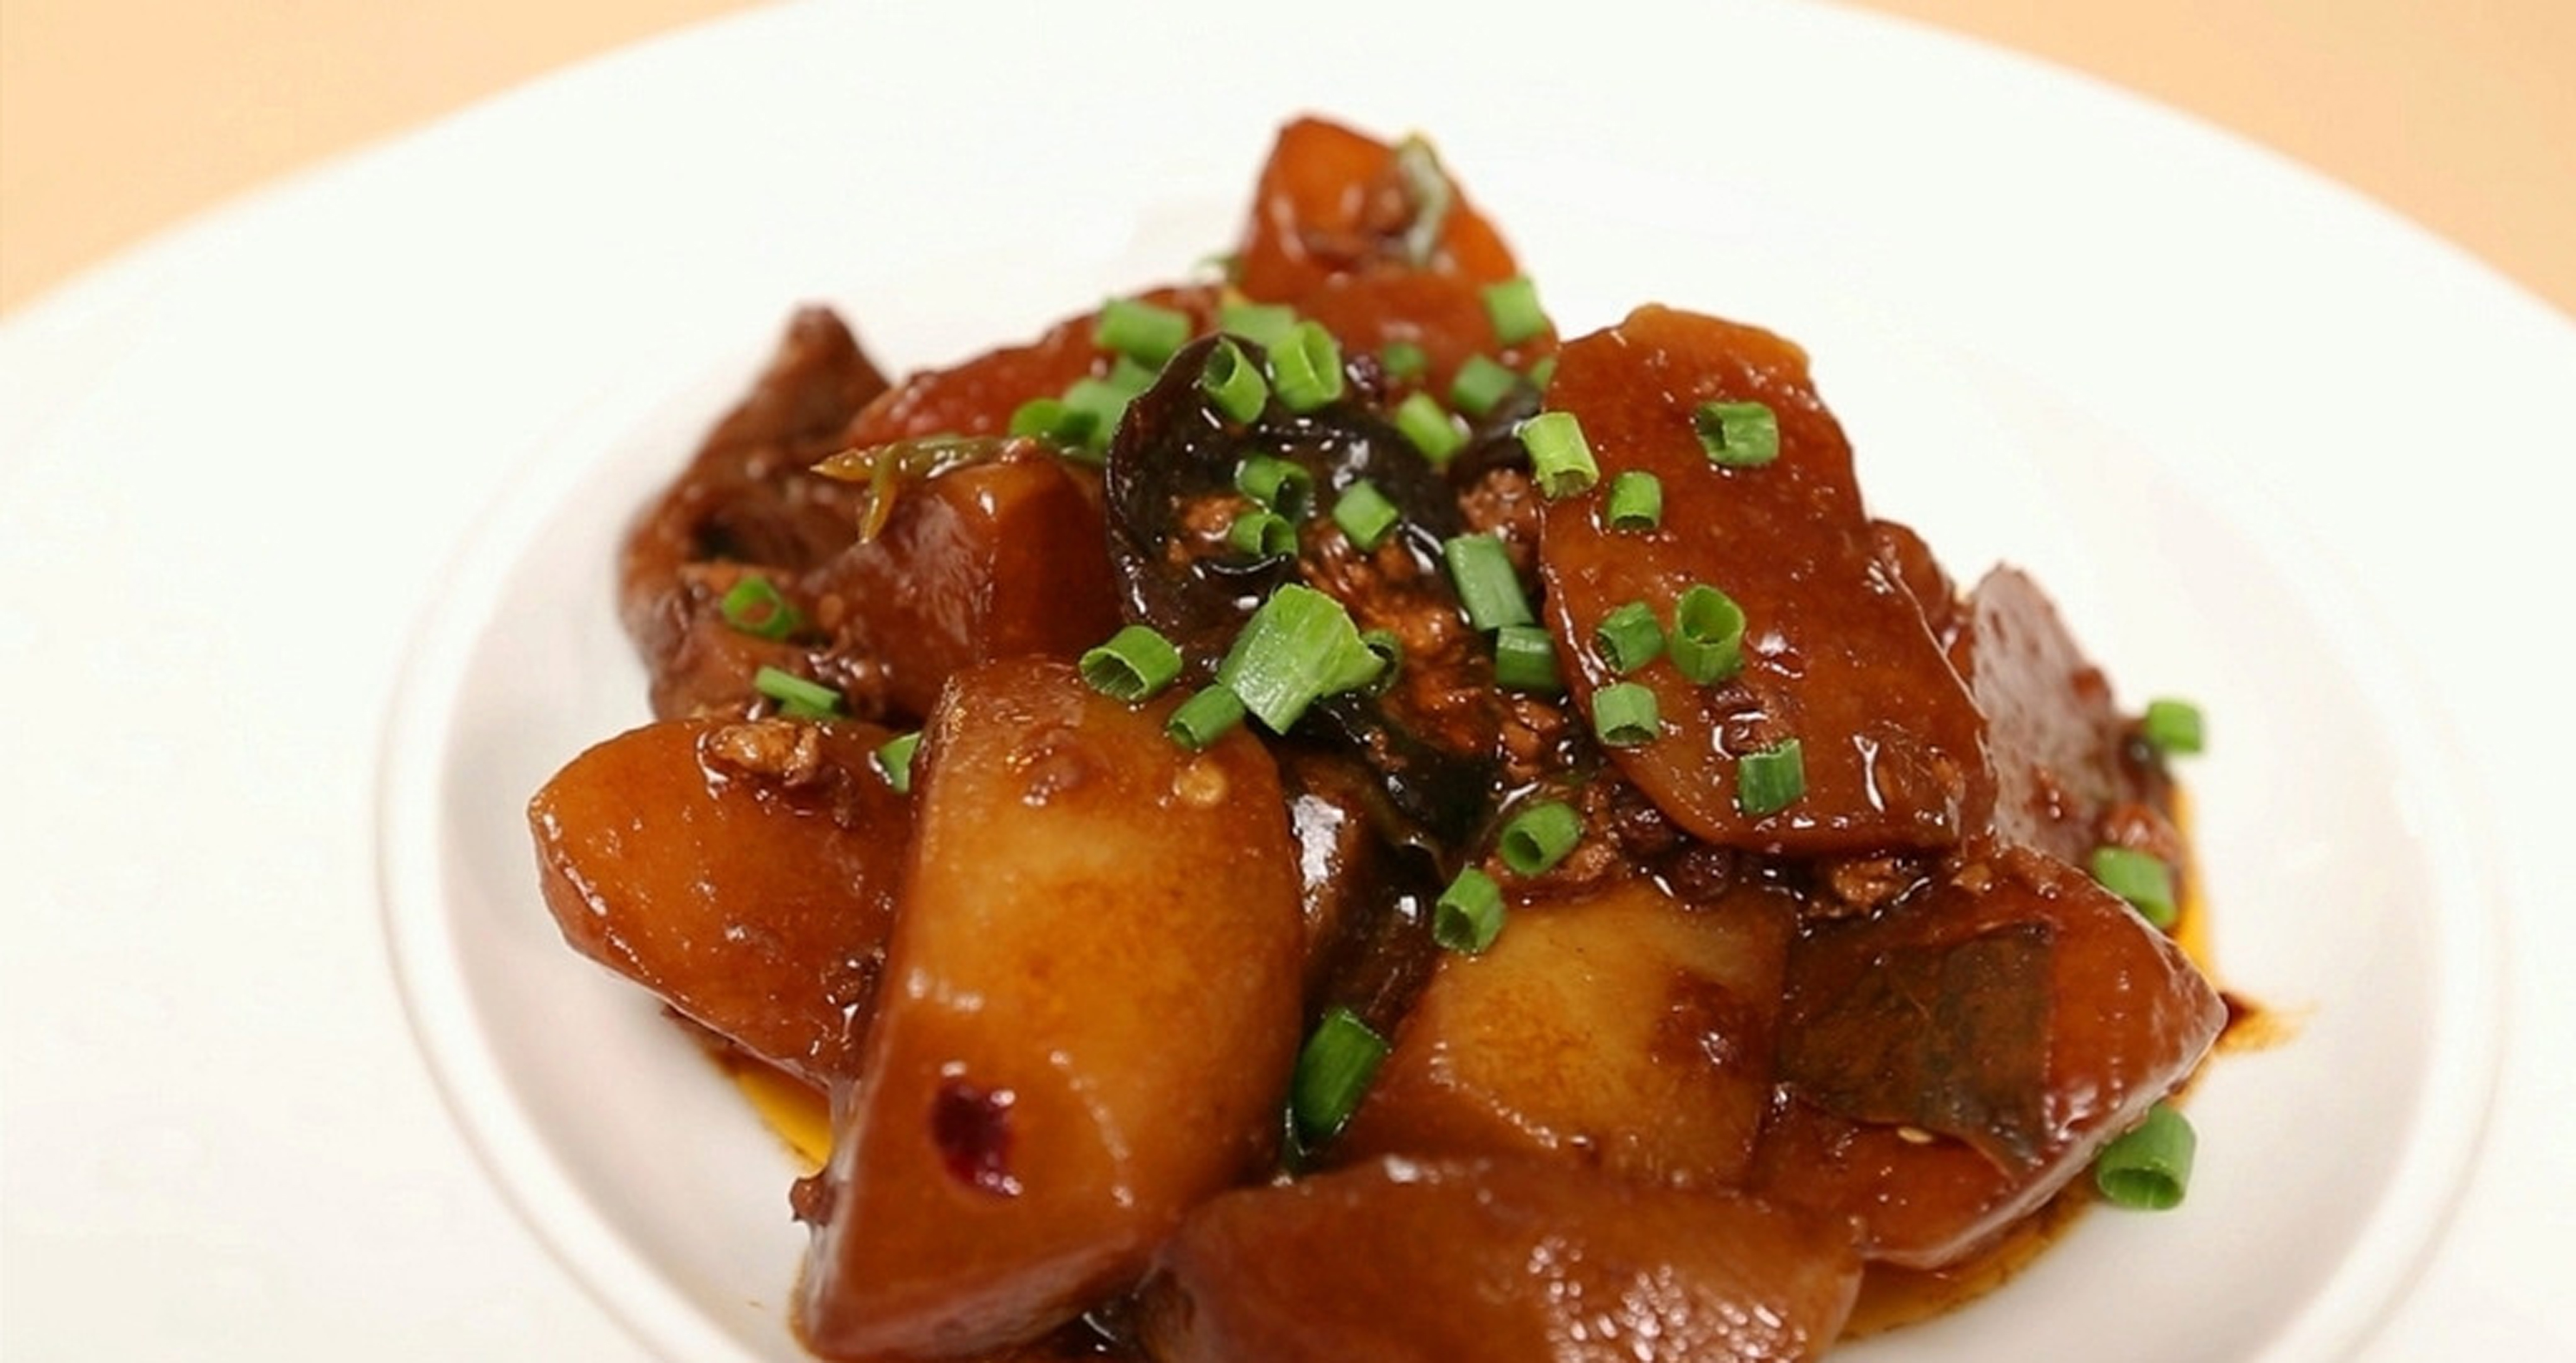 每日推荐六道美味炒菜:红烧萝卜